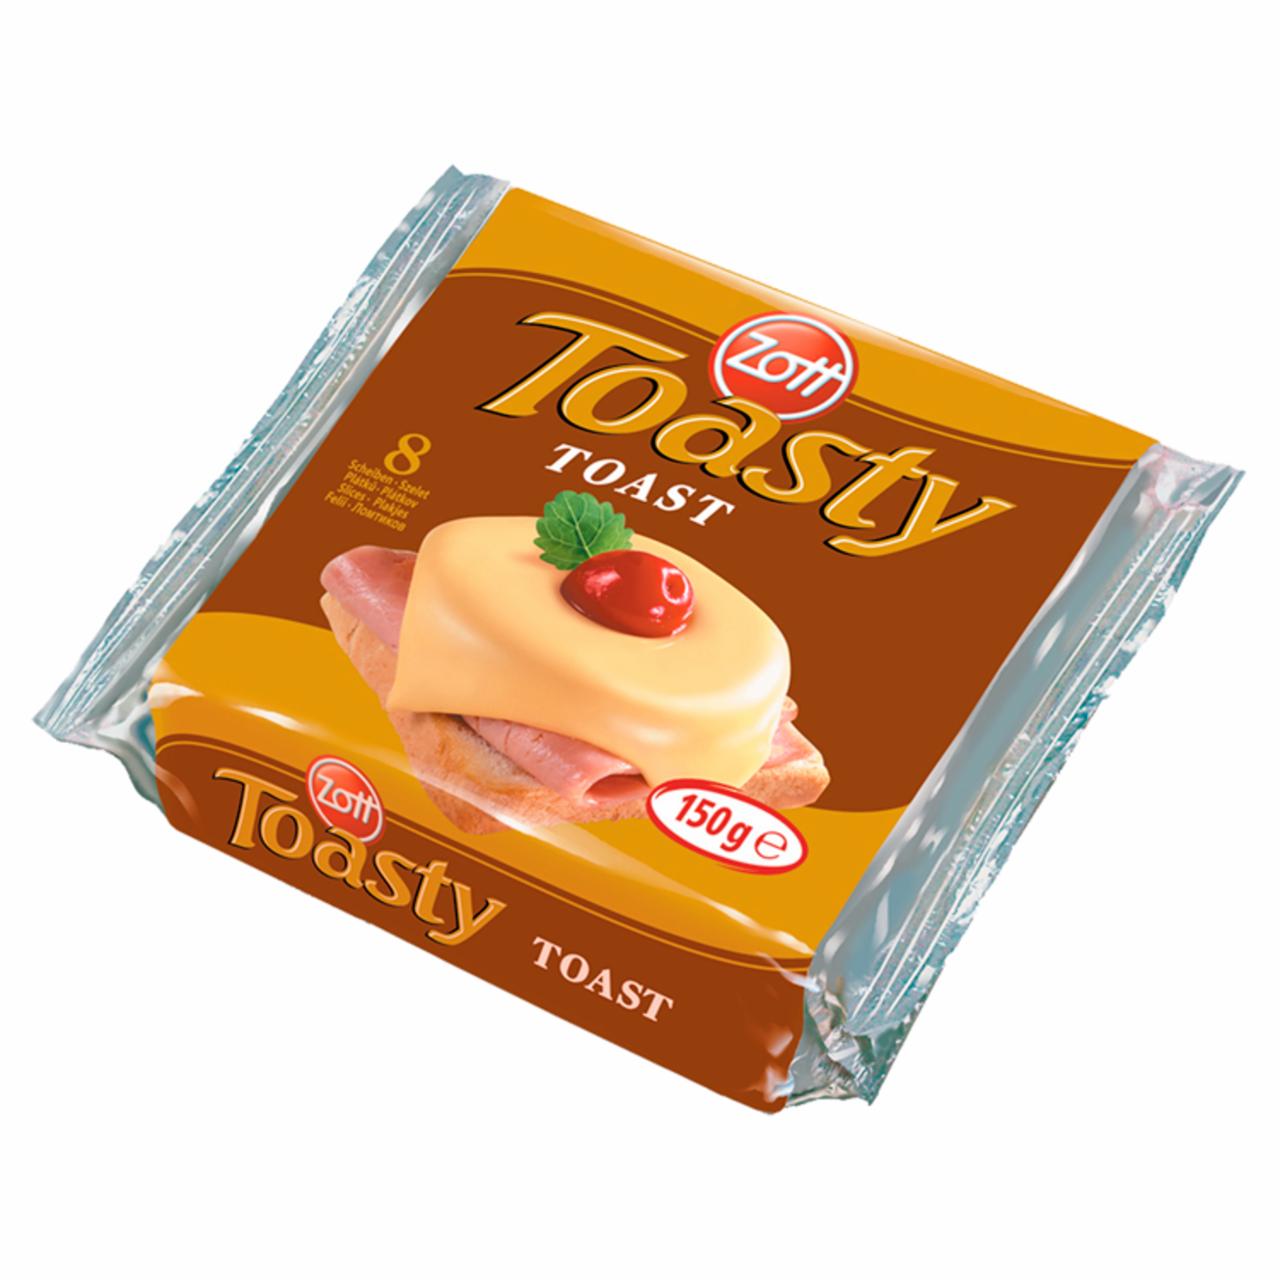 Képek - Toasty Toast zsíros ömlesztett sajt Zott